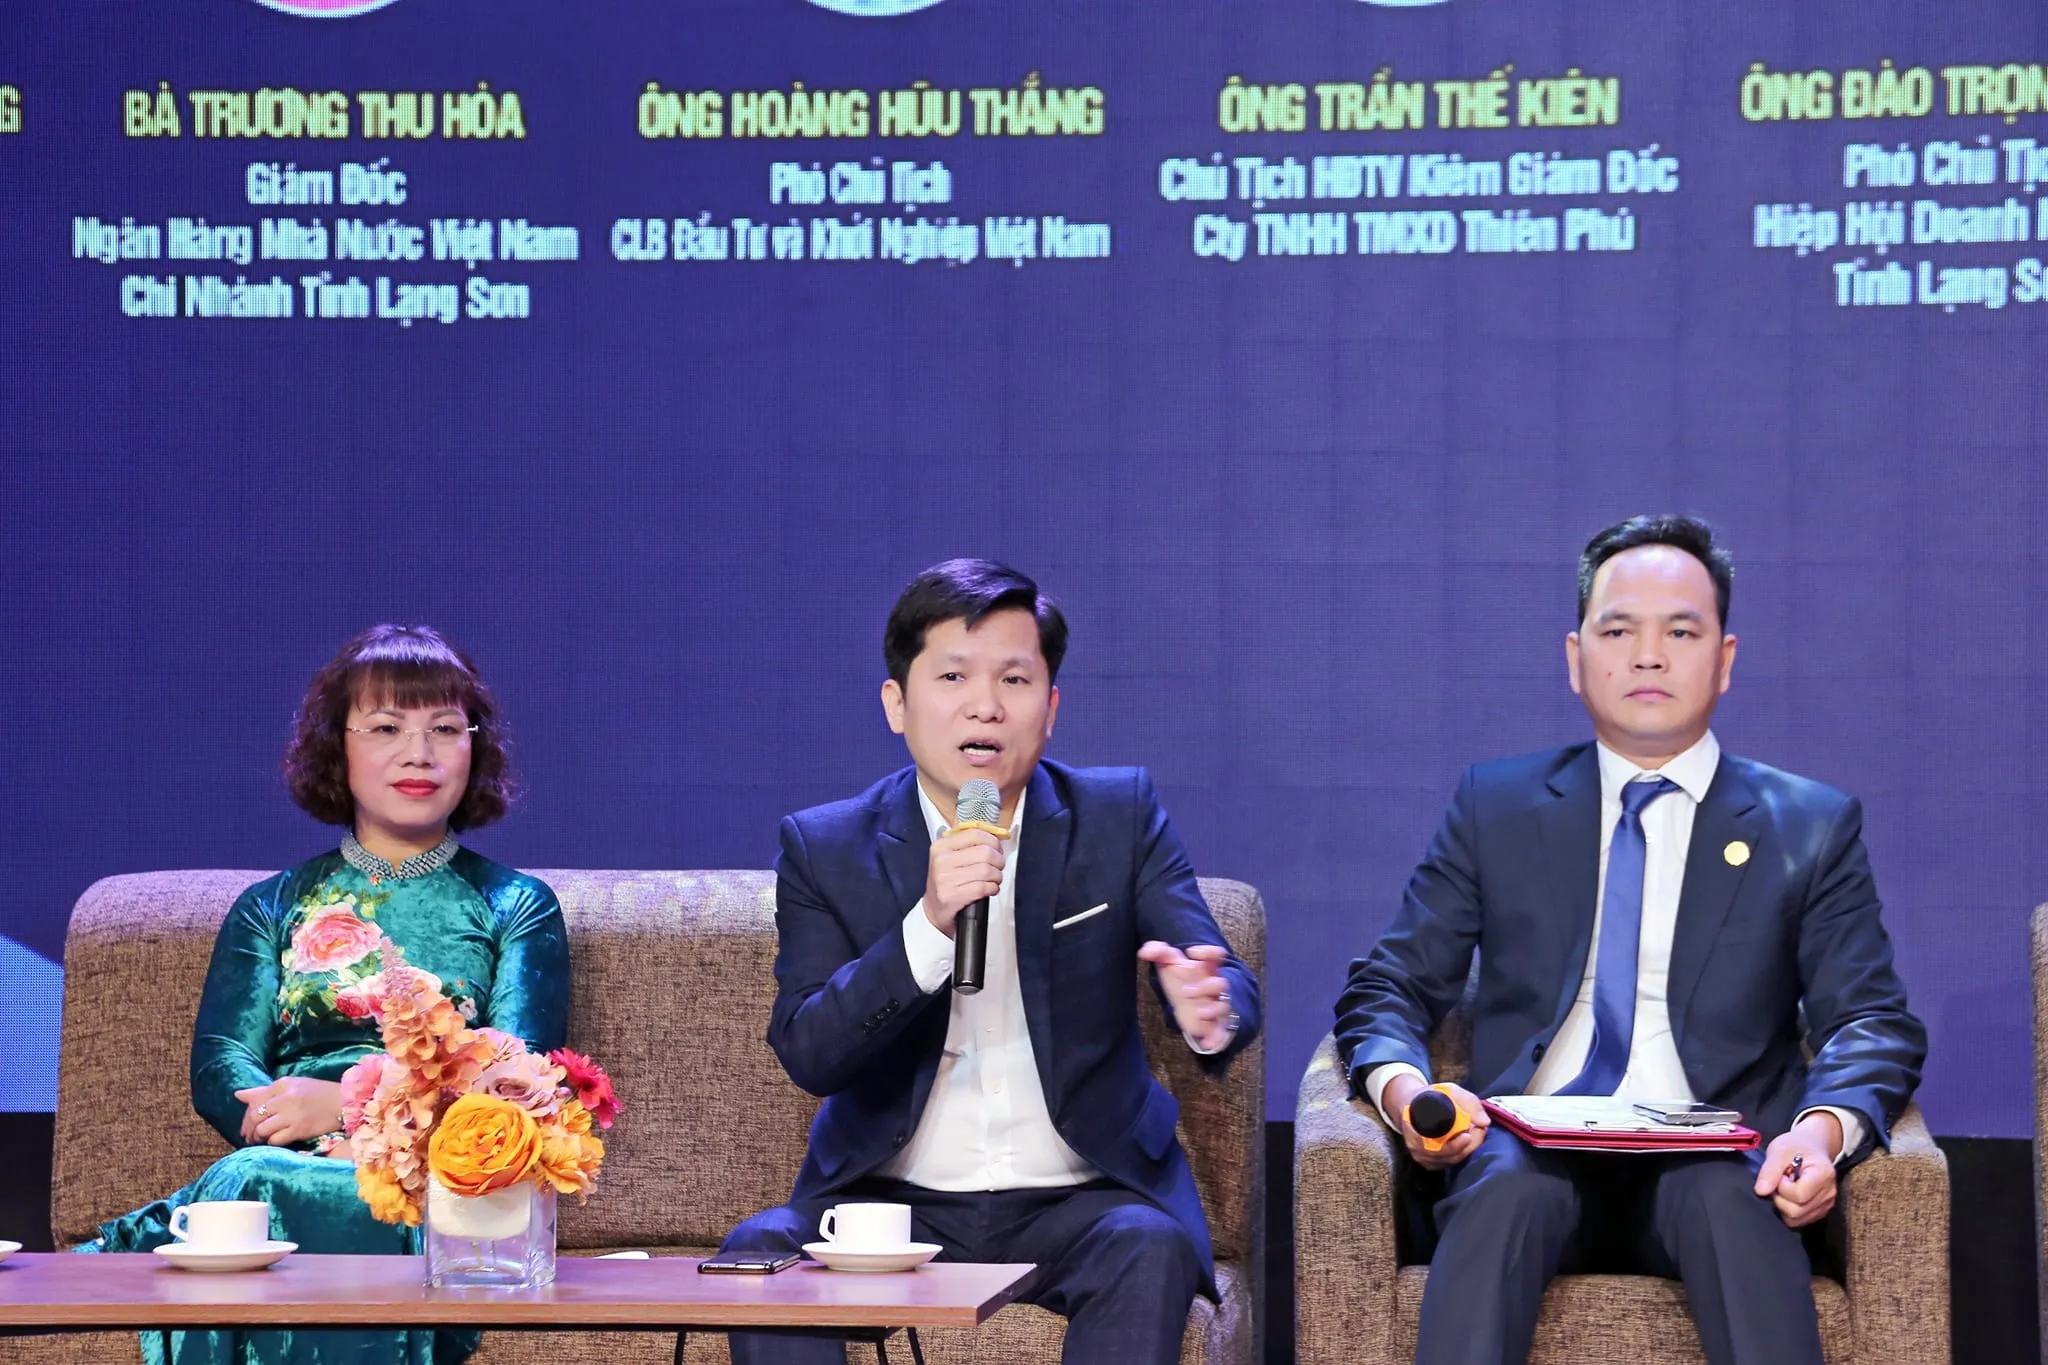 Doanh nhân Hoàng Hữu Thắng chia sẻ cùng hơn 600 đoàn viên thanh niên tỉnh Lạng Sơn trong diễn đàn Thanh niên “DÁM”